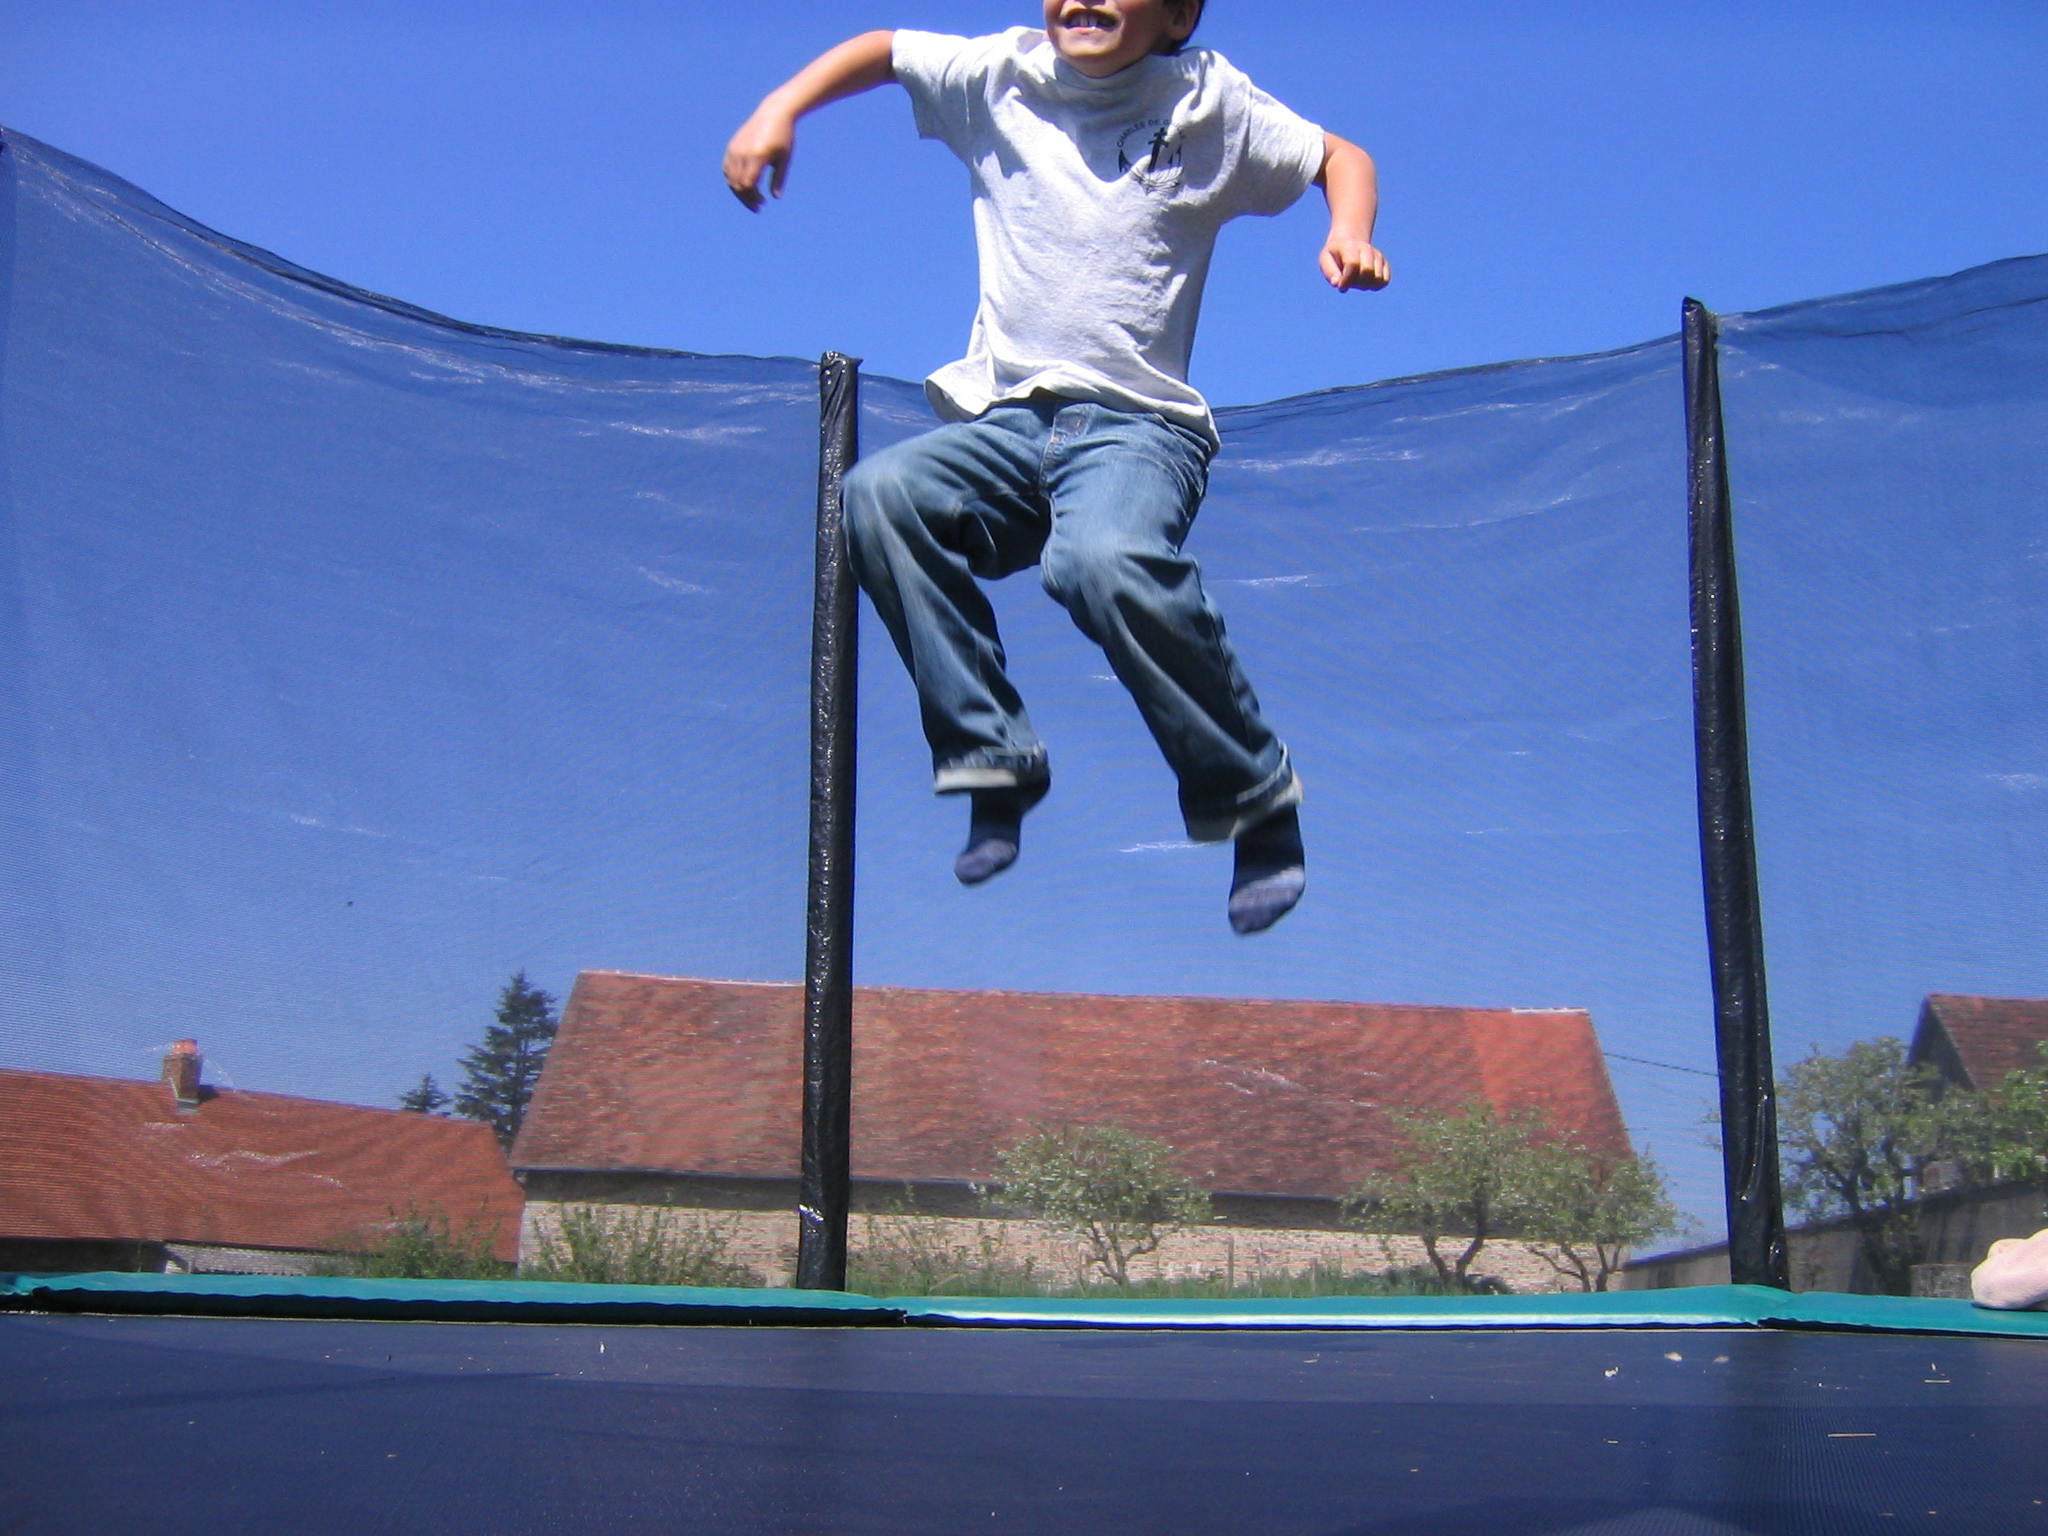 Mal itálico molécula trampolin | Jump'in Spain: El blog sobre camas elásticas